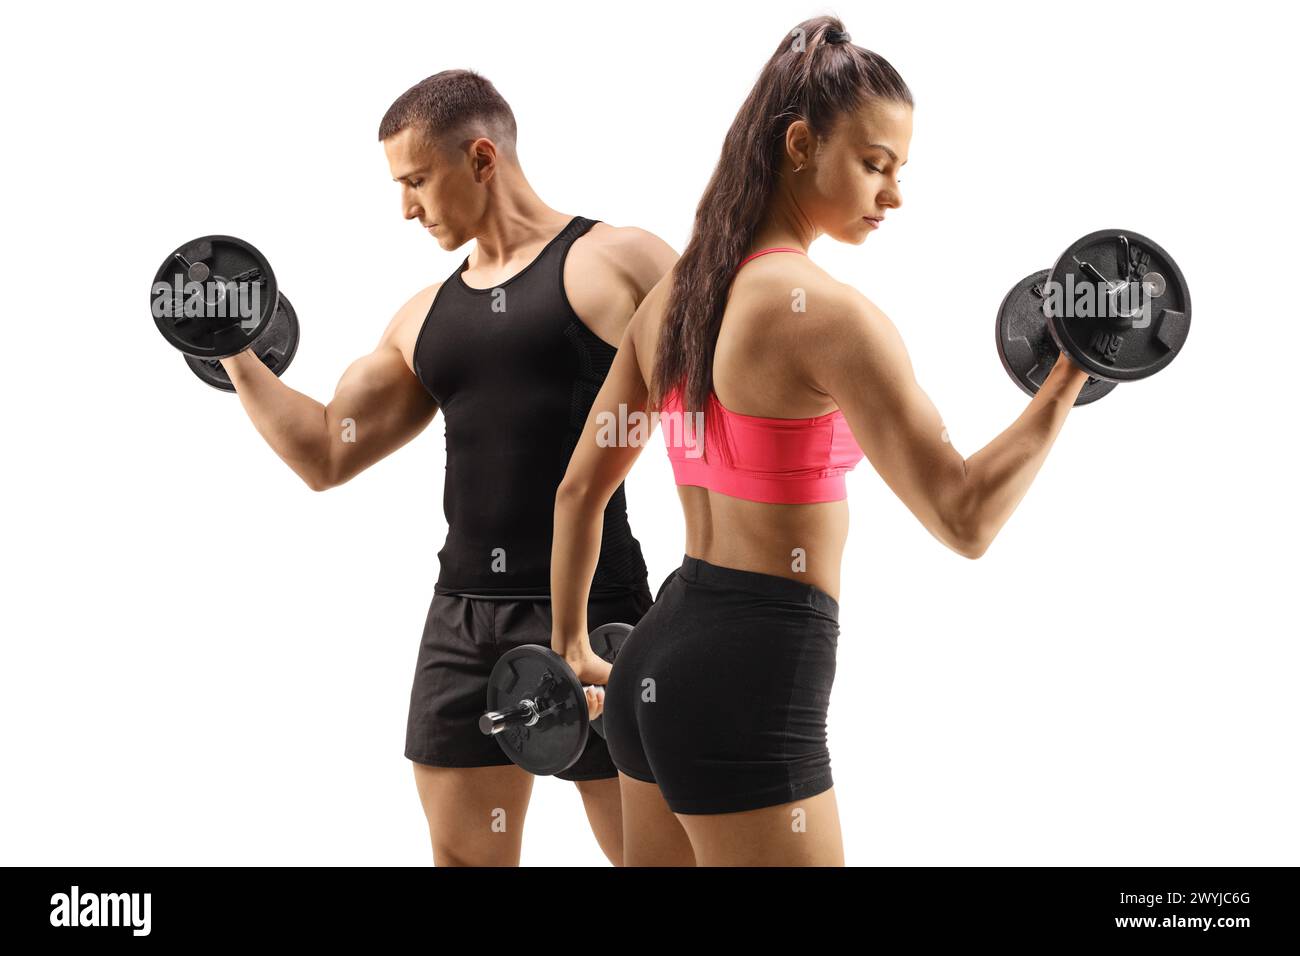 Uomo e donna che esercitano l'allenamento con pesi con un manubrio isolato su sfondo bianco, concetto di sport e fitness Foto Stock